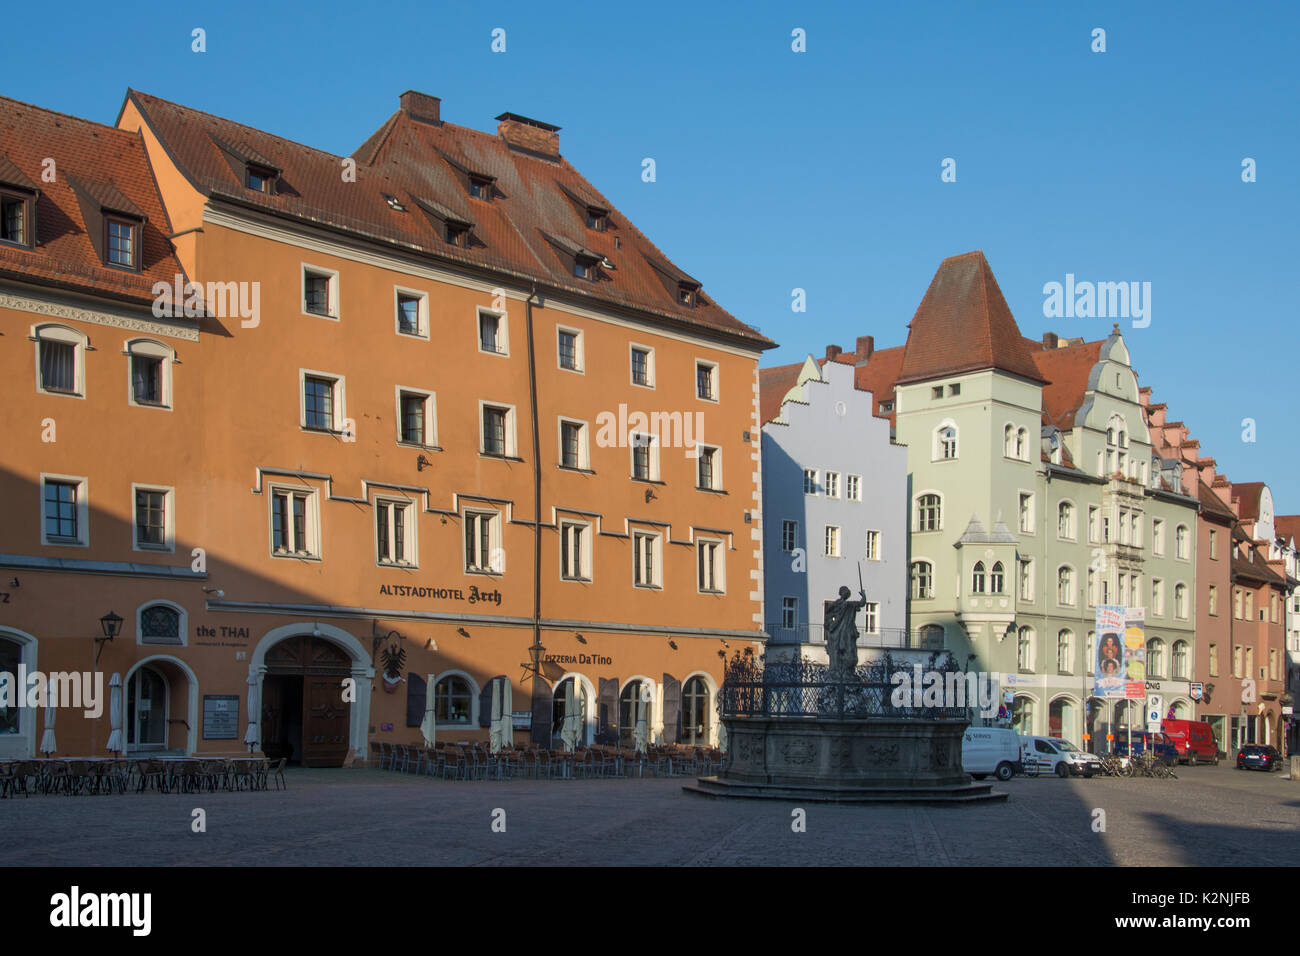 Tôt le matin soleil réchauffe les maisons construites par les marchands du Moyen âge dans l'Altstadt ou vieille ville de Ratisbonne, Bavière, Allemagne Banque D'Images